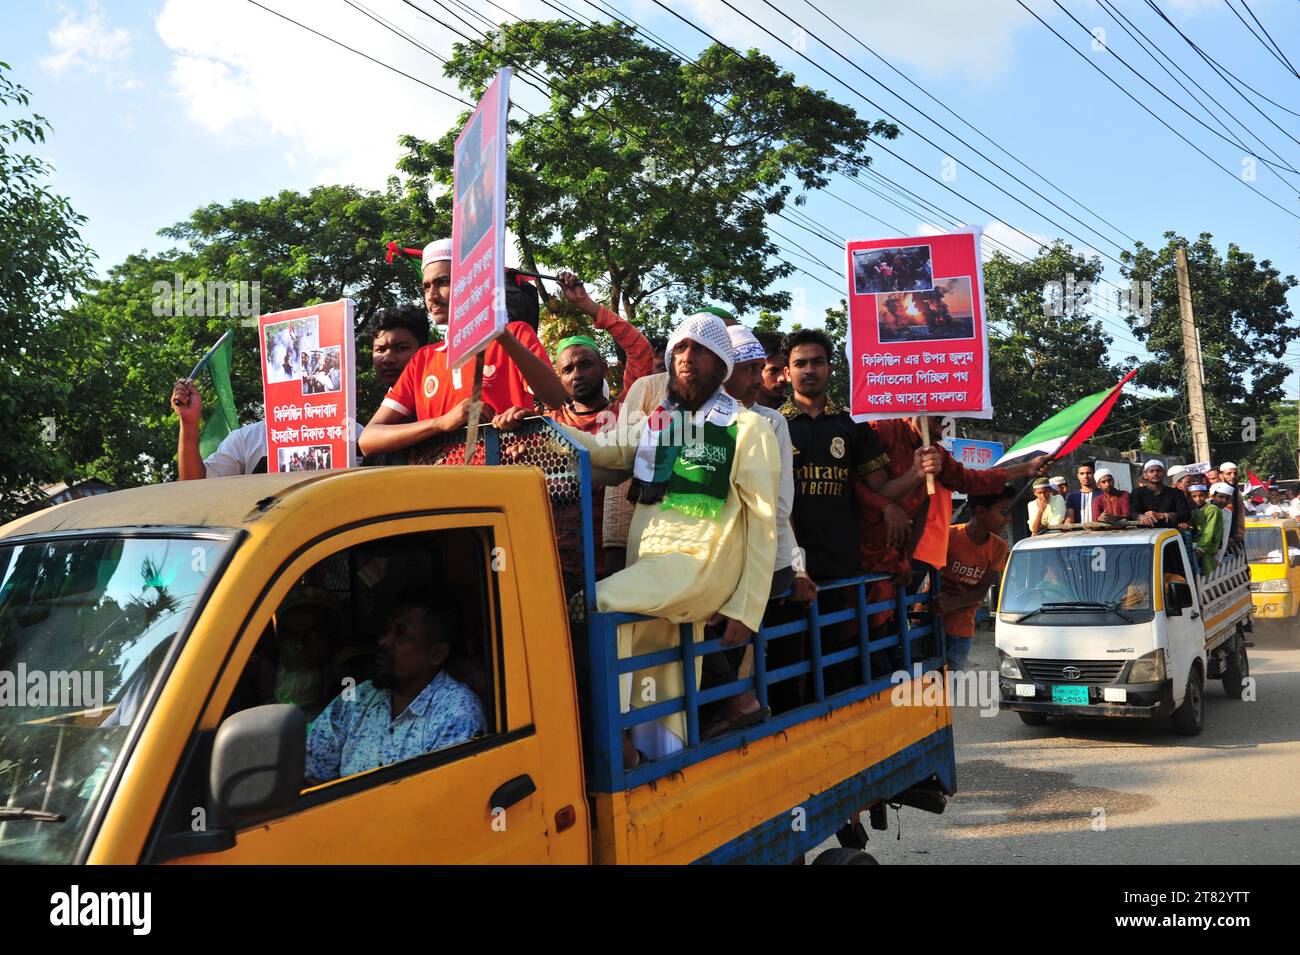 Muslimische Demonstranten des Bezirks Nr. 12 der Sylhet-Metropole protestieren in einer Lastwagenprozession auf den Straßen von Sylhet, um ihre Unterstützung für Palästina zu zeigen. Anhänger skandierten Slogans gegen Israels barbarische und illegale Besetzung Palästinas und forderten einen Boykott israelischer Produkte in Bangladesch. Sylhet, Bangladesch. Stockfoto